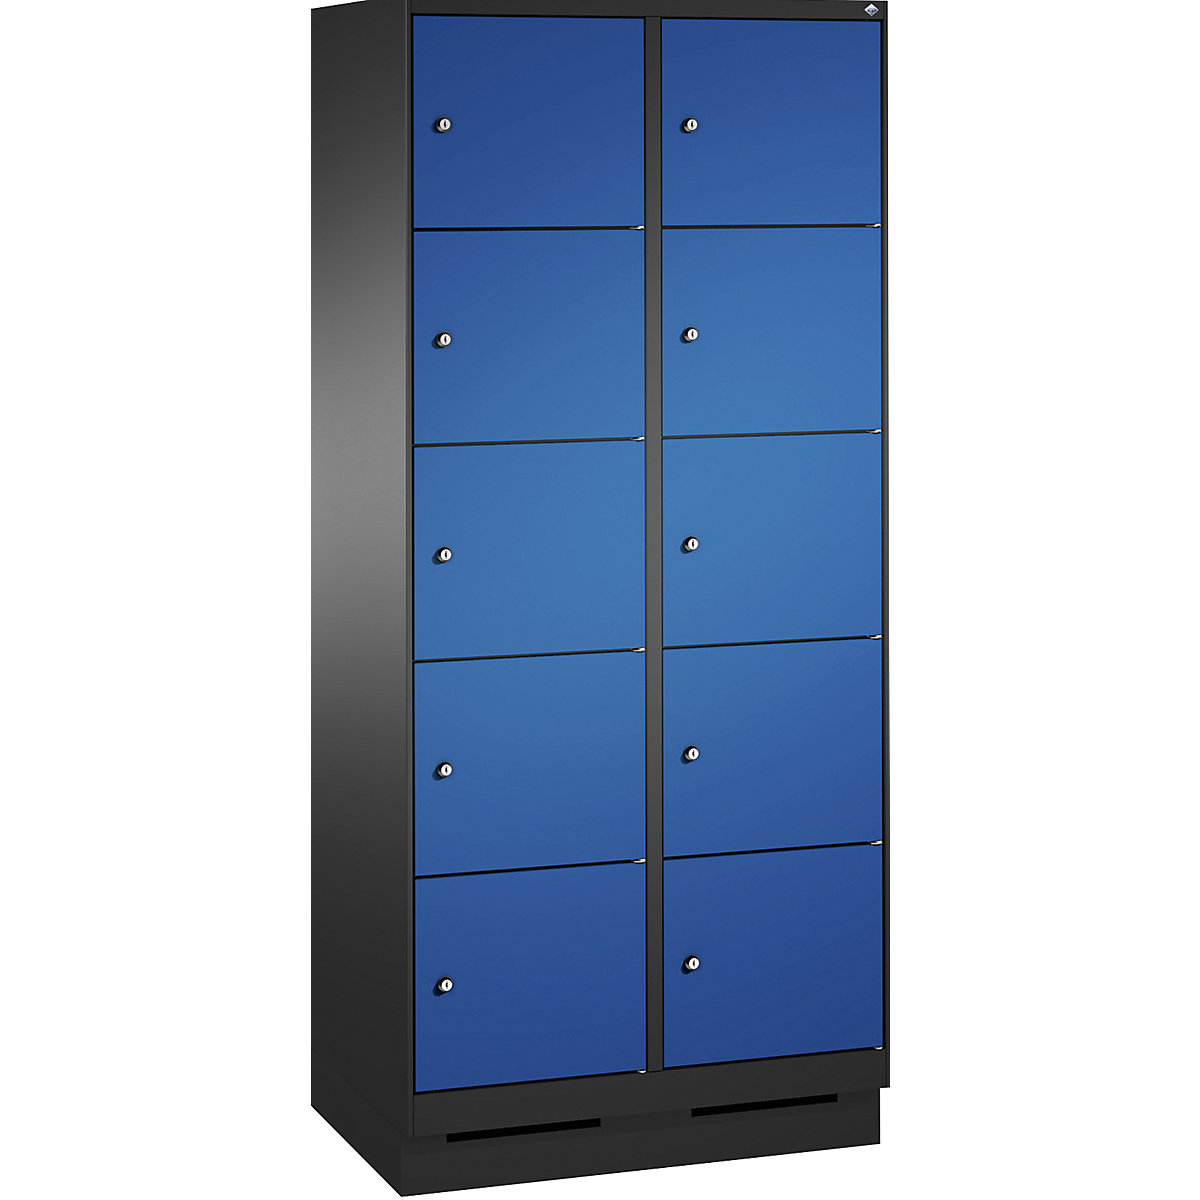 Armoire à casiers sur socle EVOLO – C+P, 2 compartiments, 5 casiers chacun, largeur compartiments 400 mm, gris noir / bleu gentiane-7